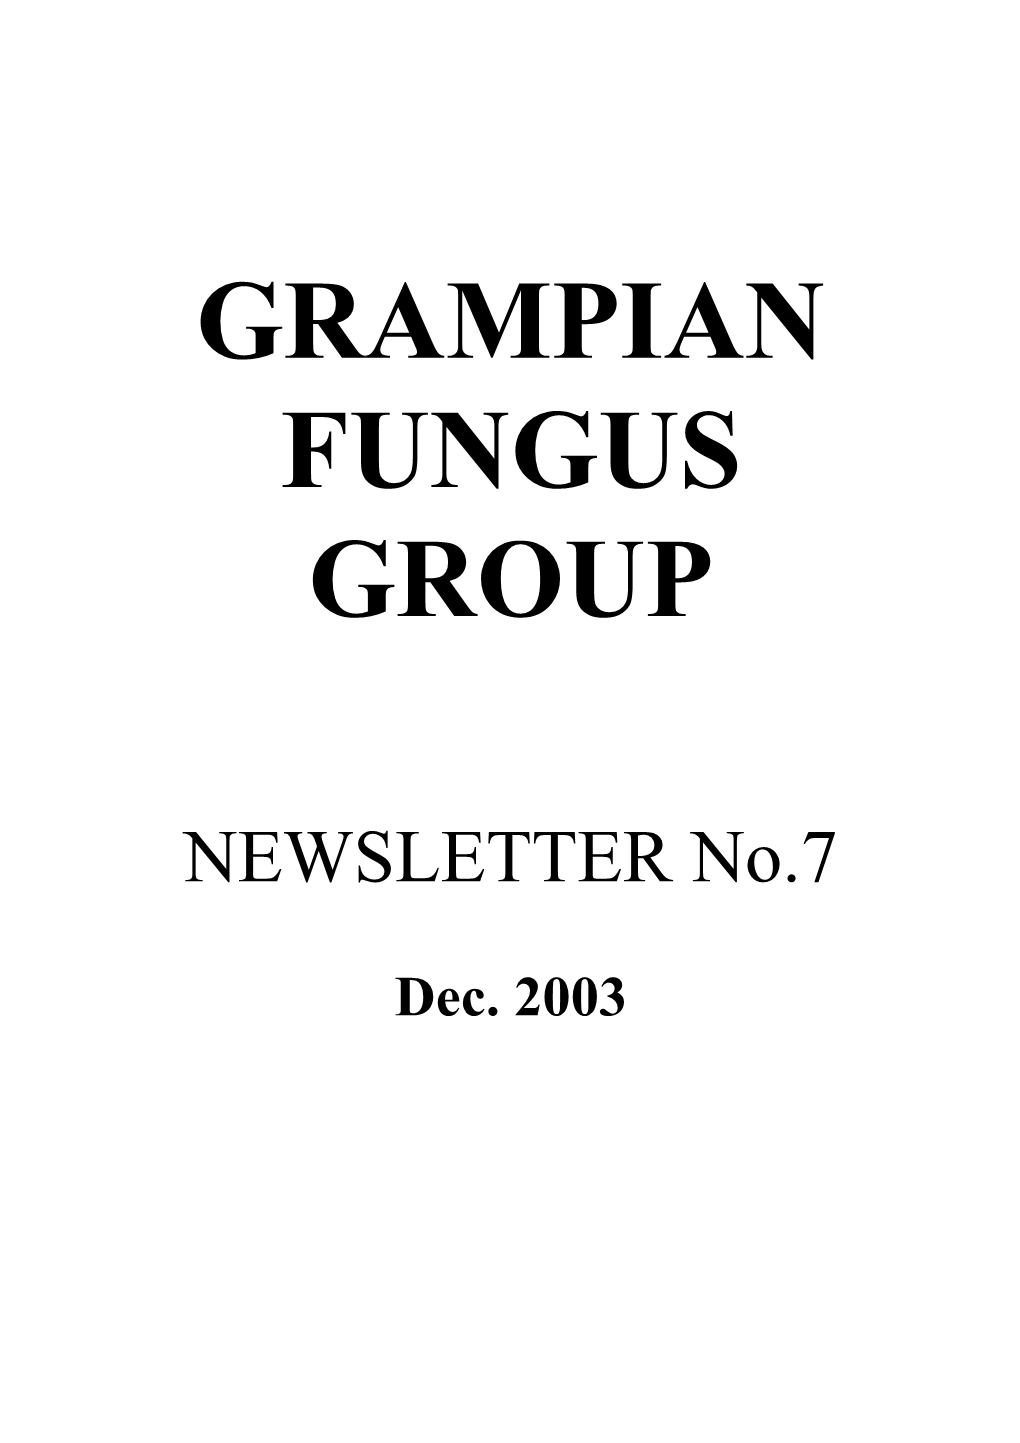 Grampian Fungus Group